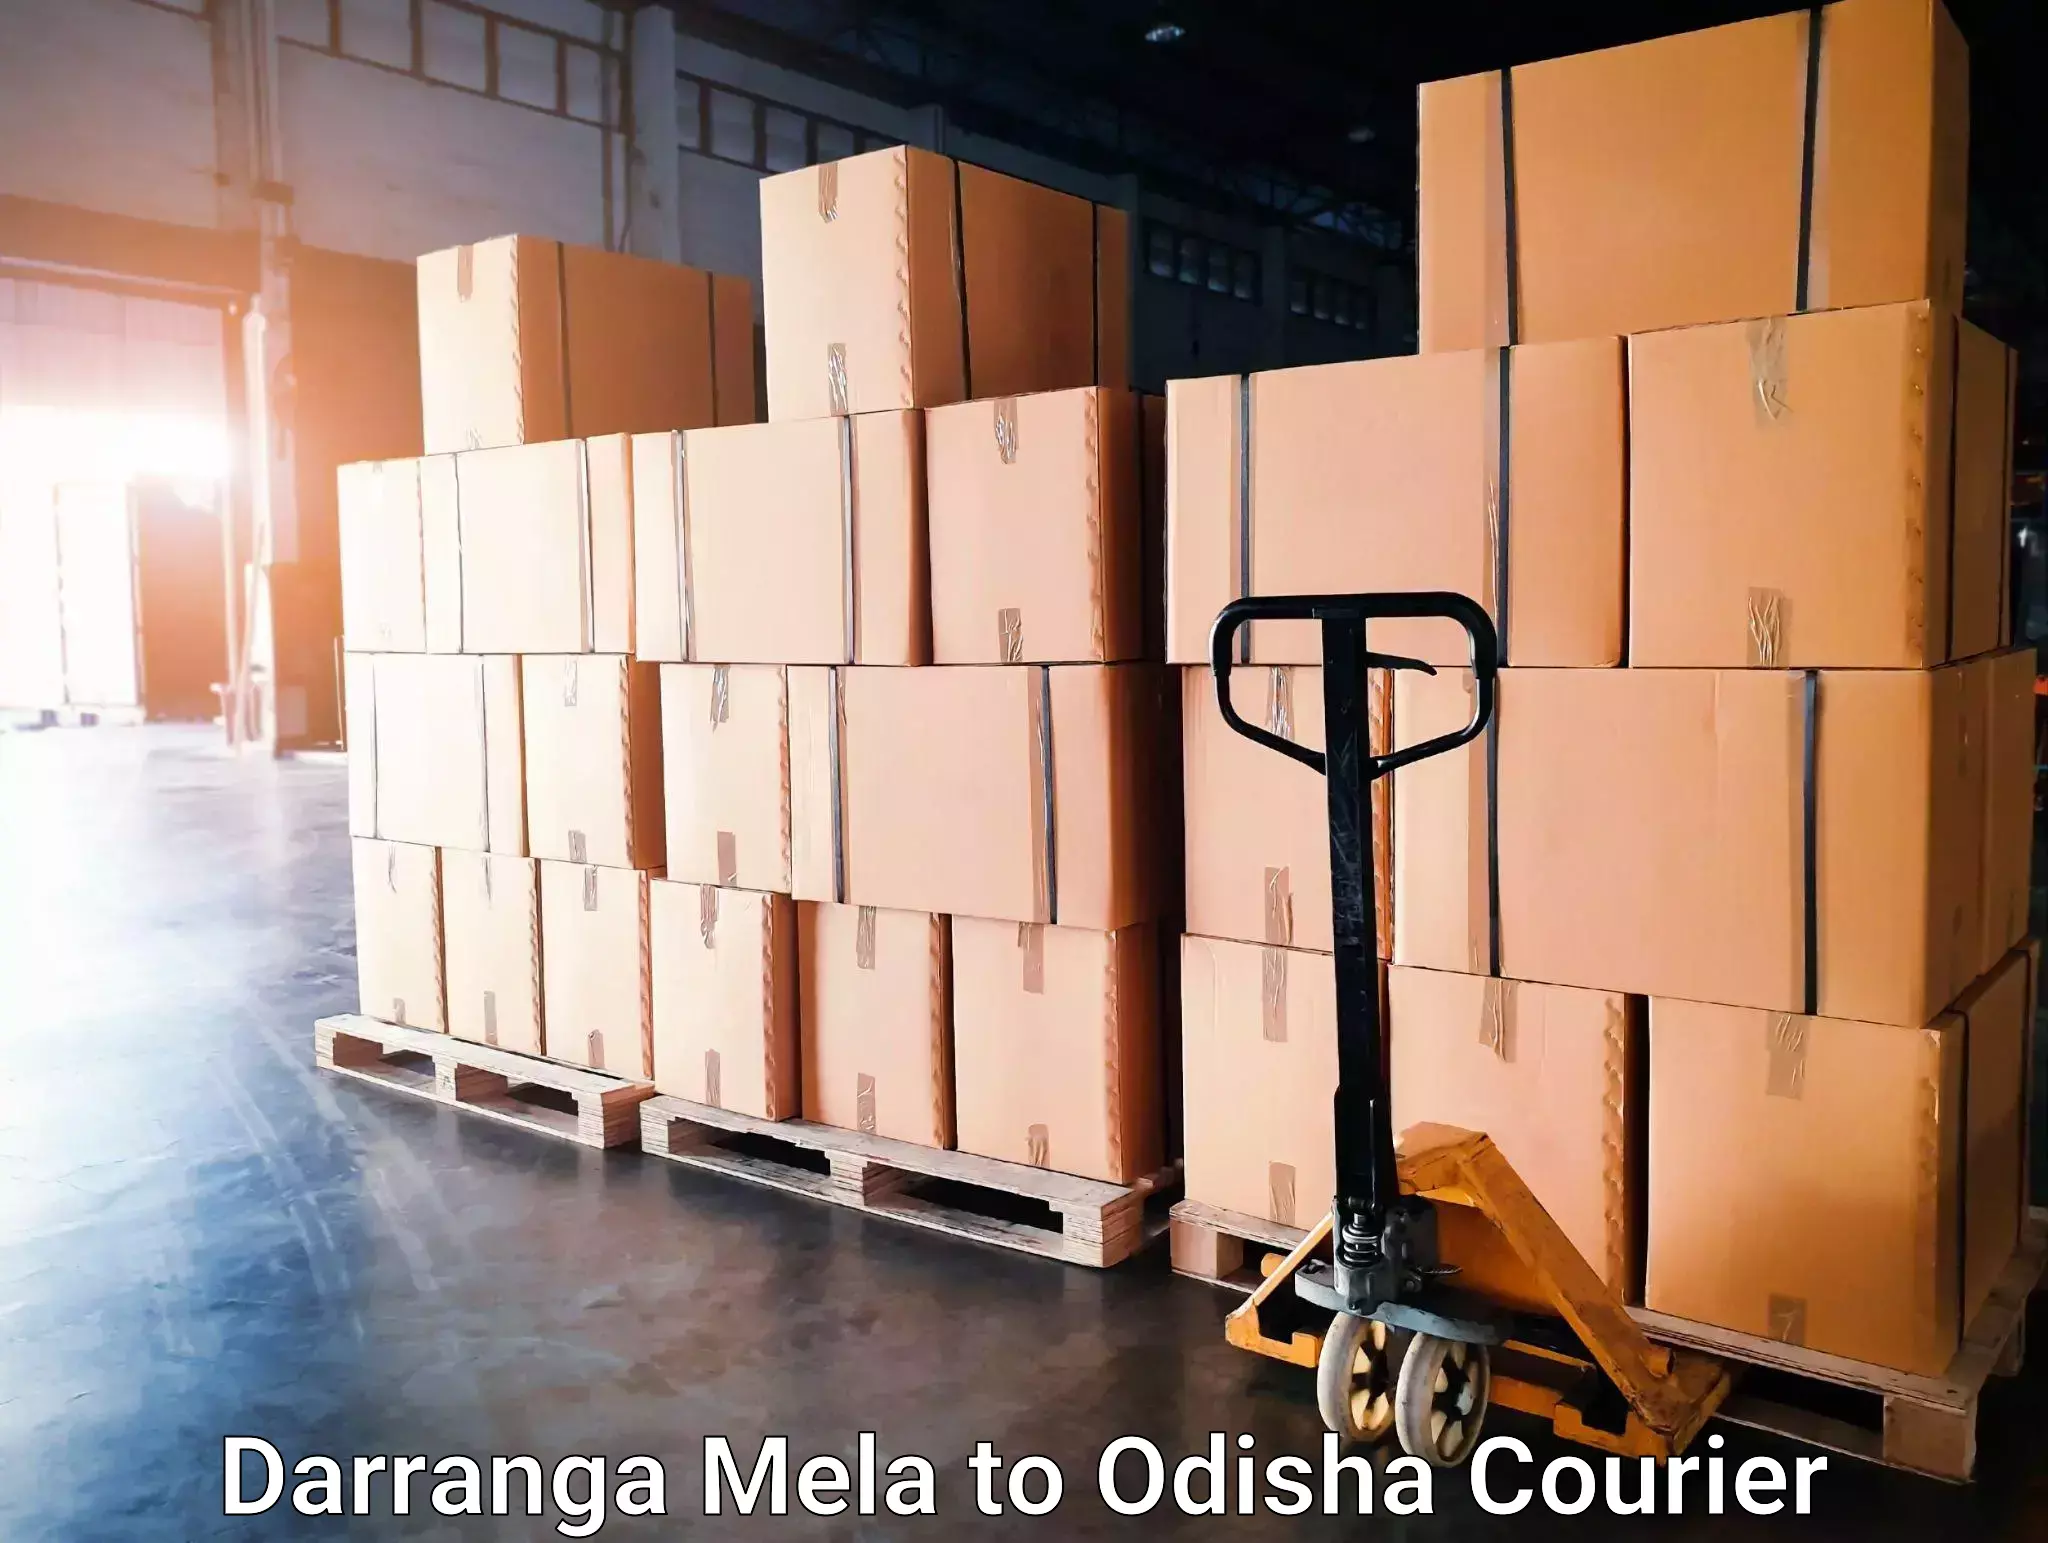 Advanced courier platforms Darranga Mela to Mangalpur